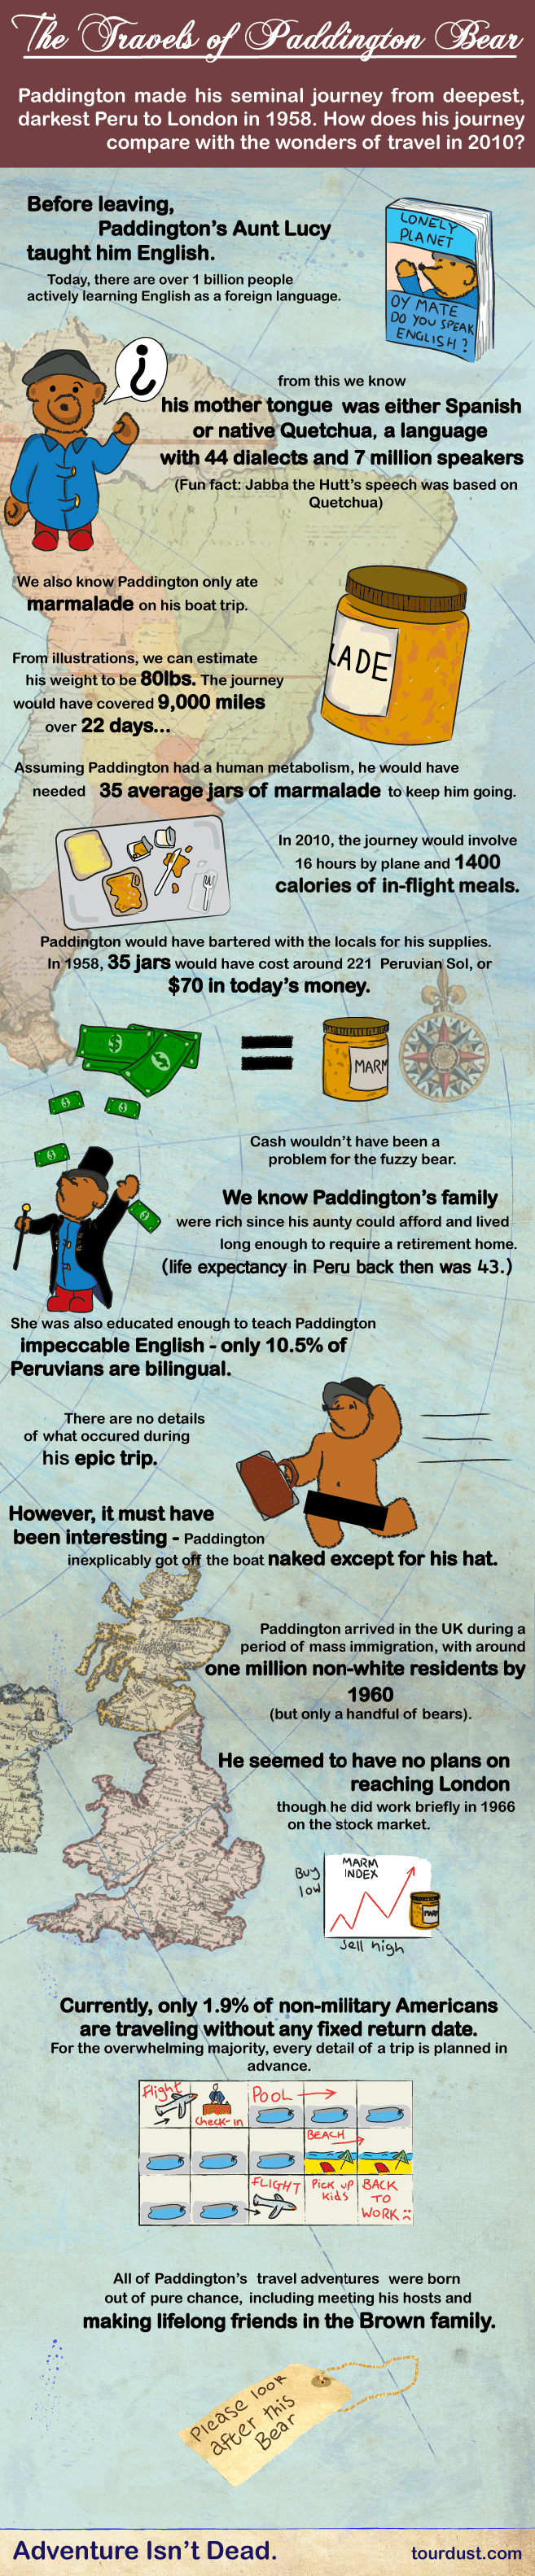 Paddington Bear History